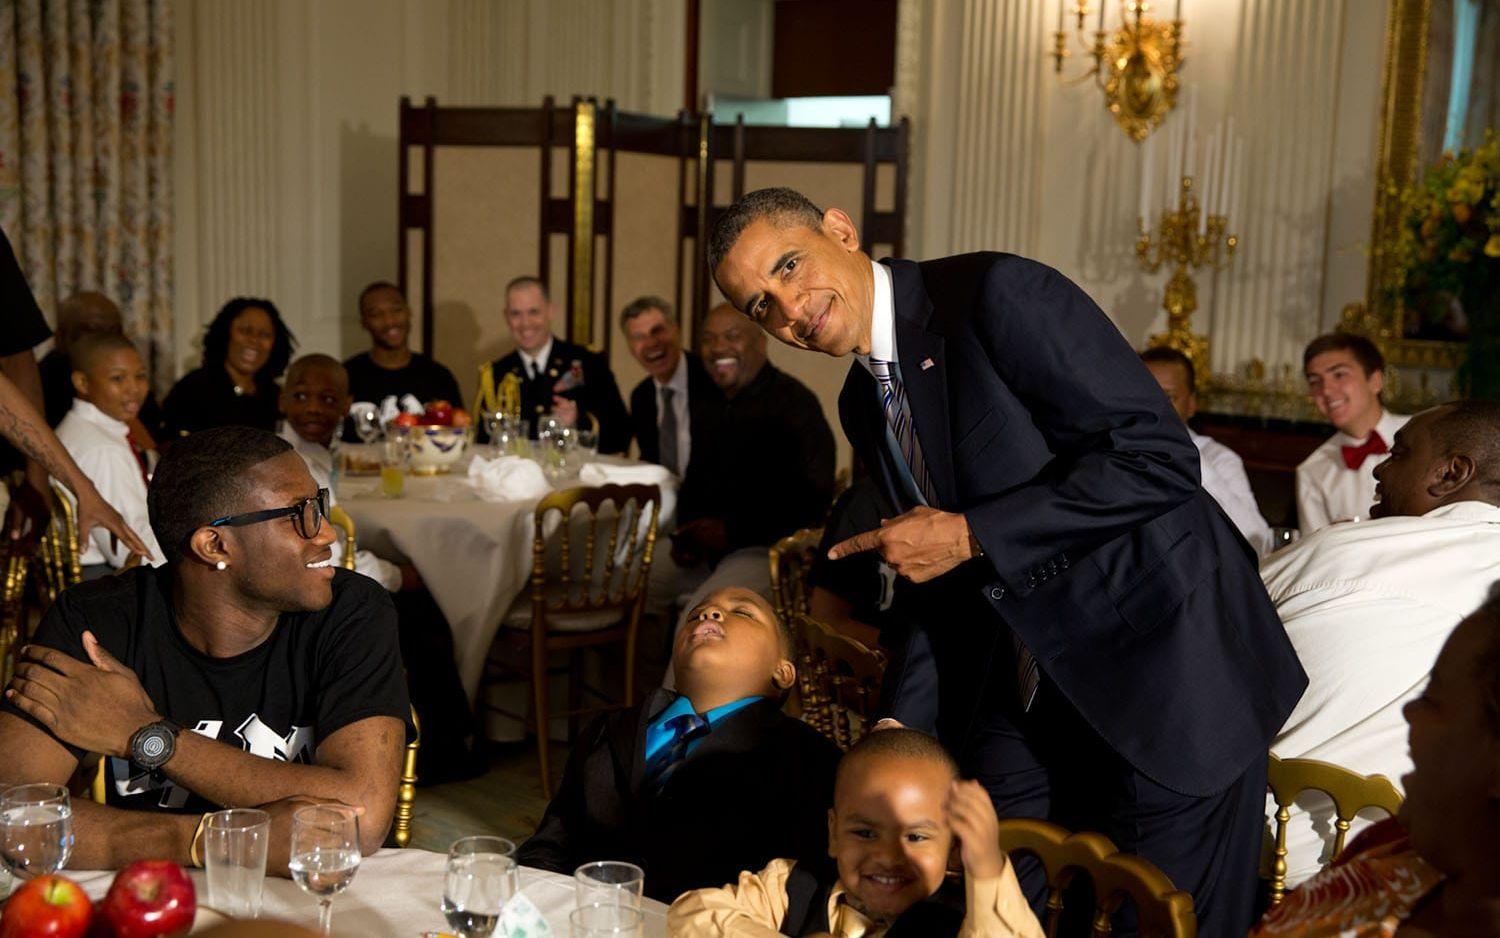 14 juni, 2013: "Presidenten ropade på mig så att jag kunde ta en bild när han poserar med en liten pojke som somnat på en middag", berättar fotografen. Foto: Pete Souza / Vita Huset